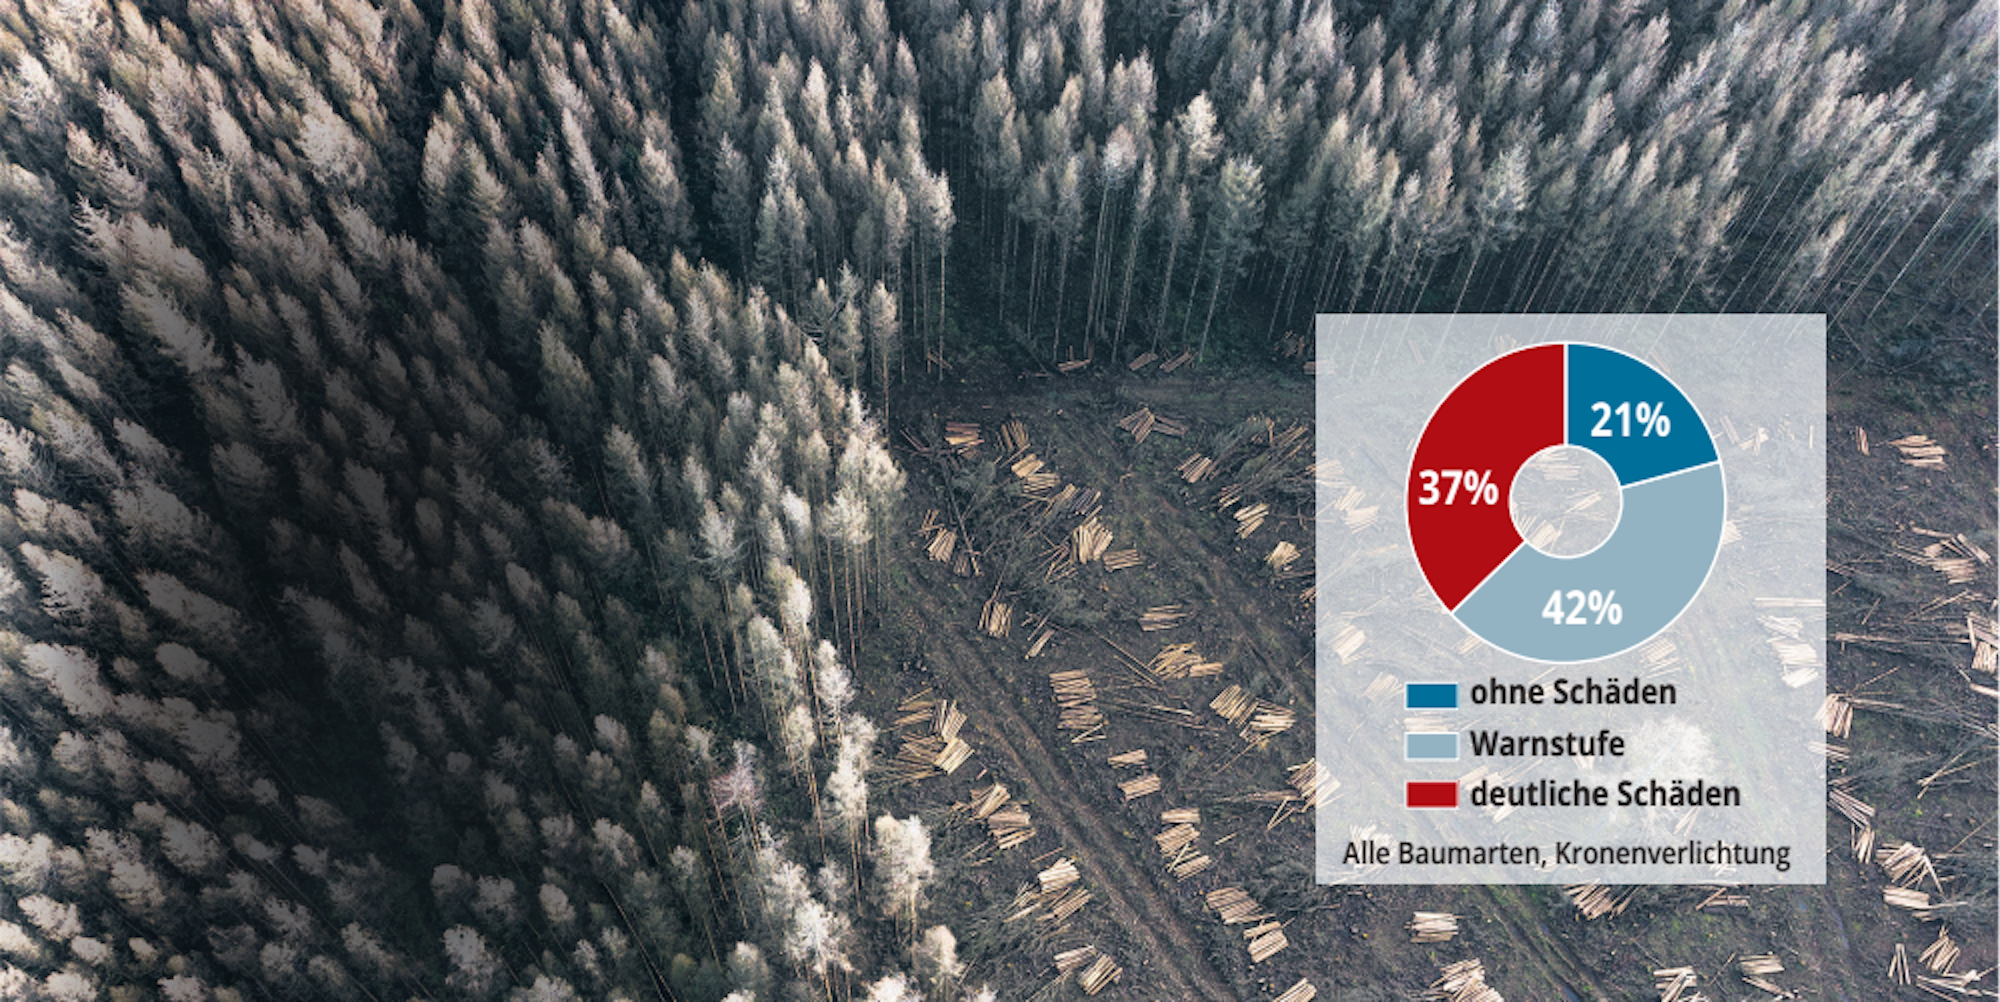 Stürme, Dürre und Borkenkäfer haben auch in NRW zu dramatischen Schäden in den Wäldern geführt.